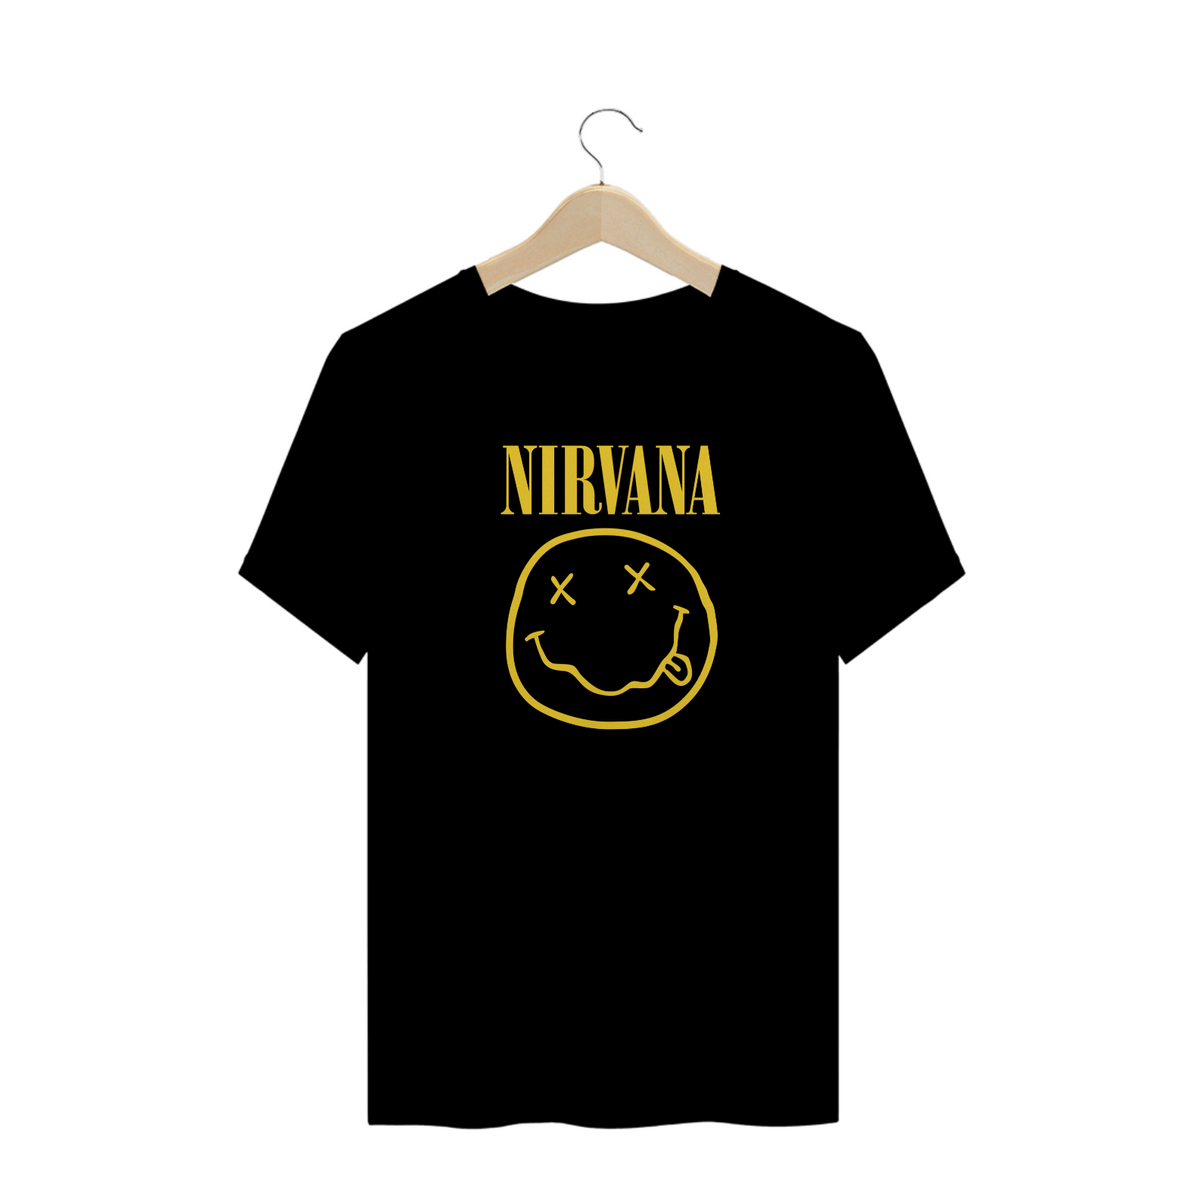 Nome do produto: Bandas - Camisa Nirvana